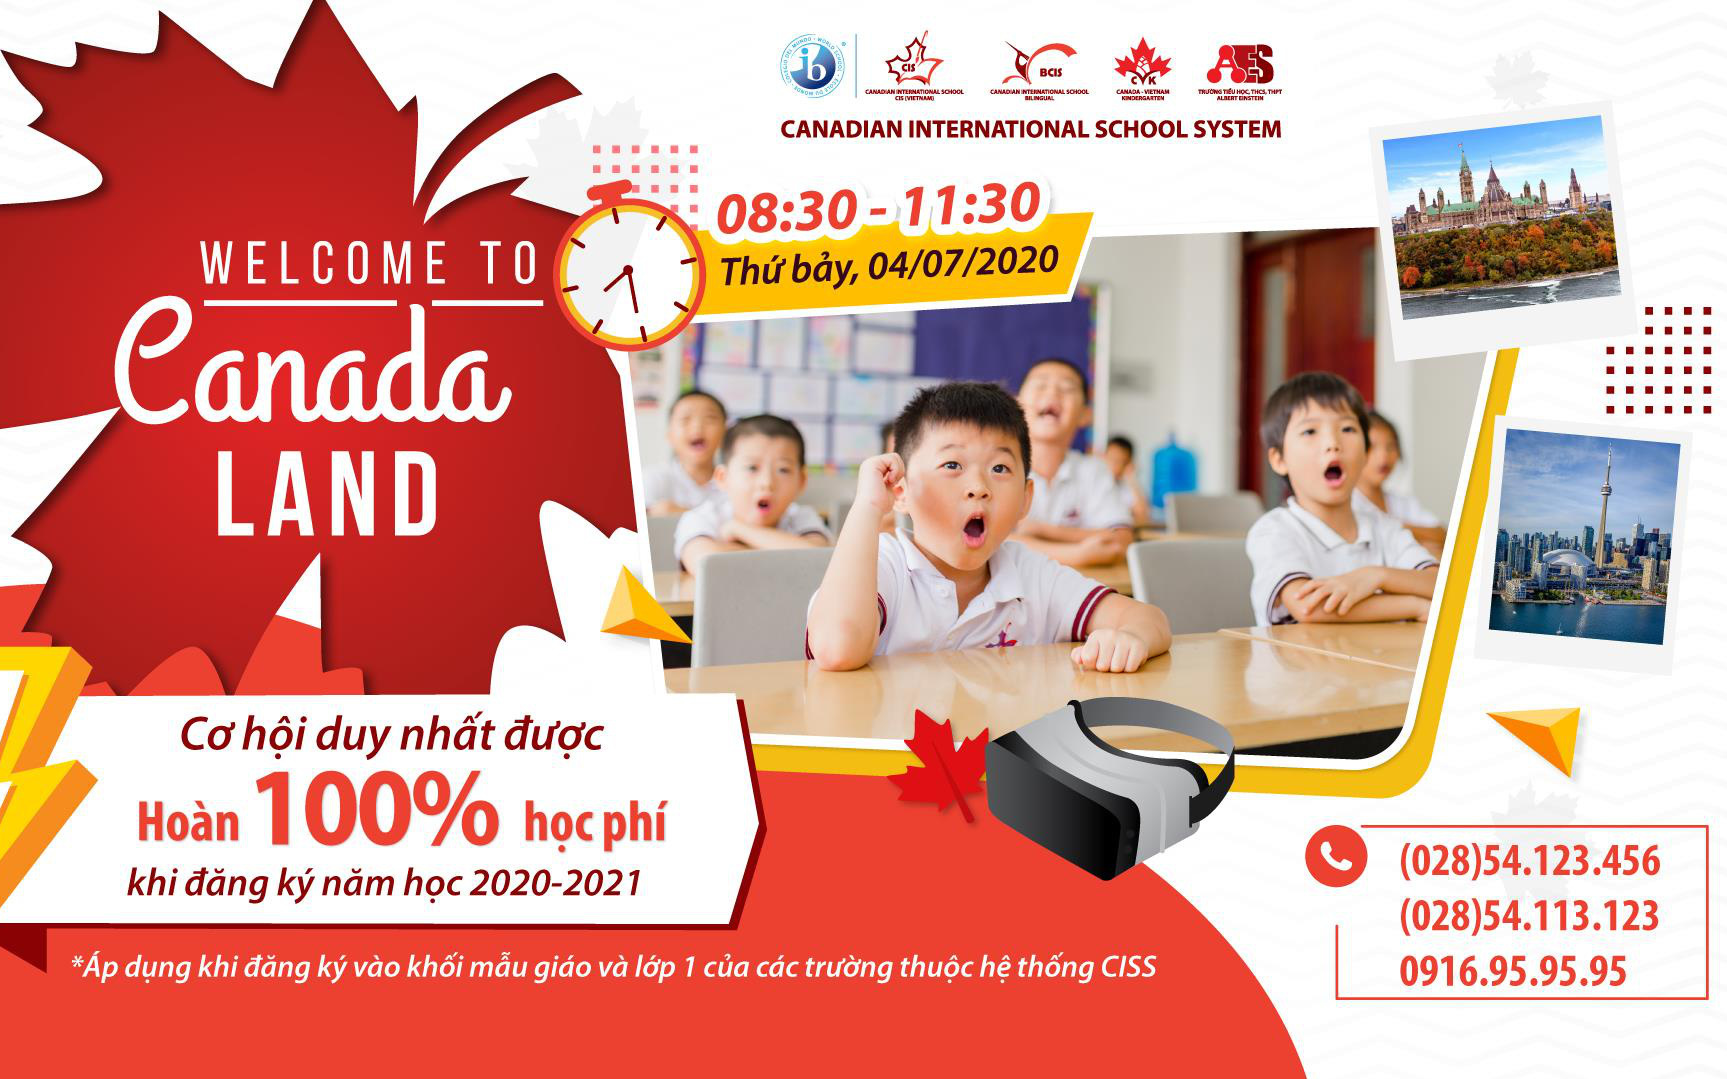 Hệ thống trường quốc tế Canada (CISS) công bố chương trình “Hoàn 100% học phí khi đăng ký nhập học lớp 1 và khối mầm non”